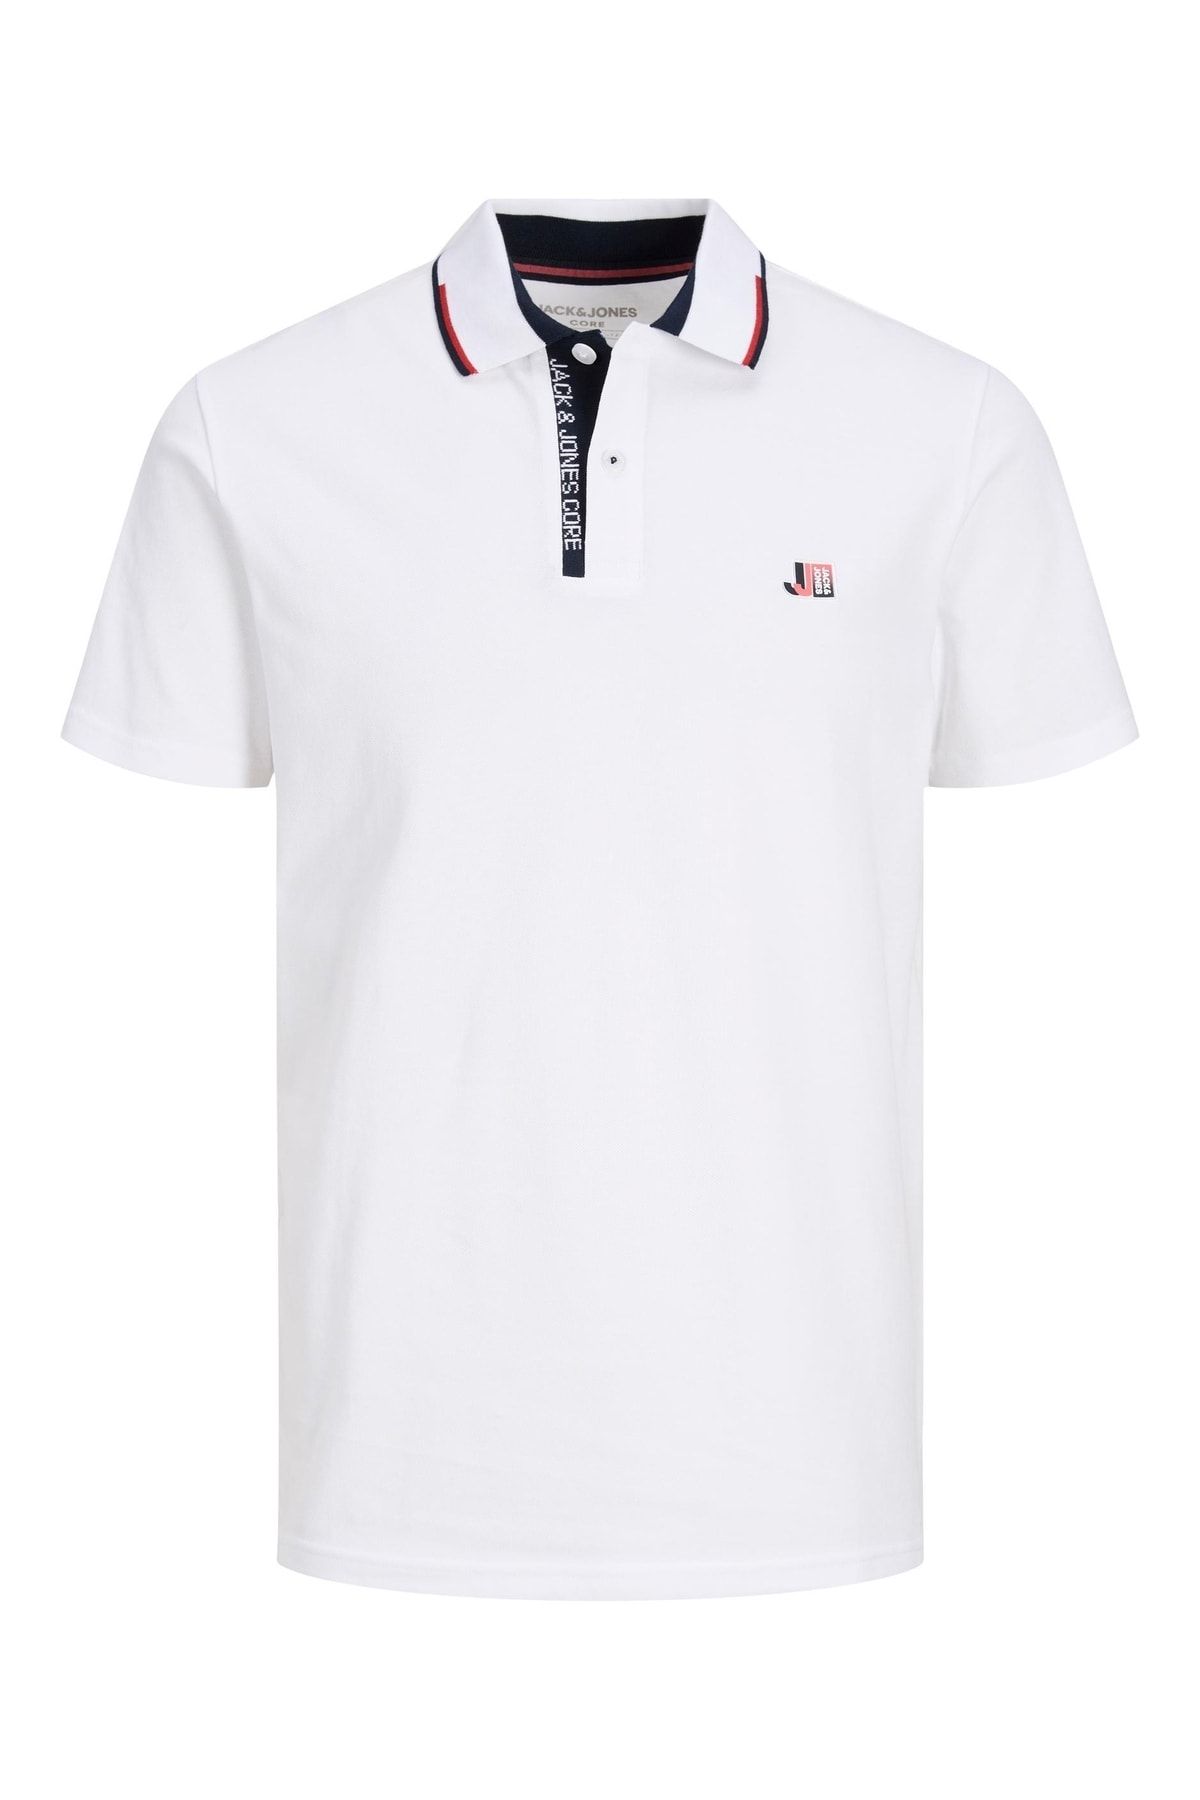 Jack & Jones تی شرت سفید مردانه جک جونز لوگان پولو 12229382-01